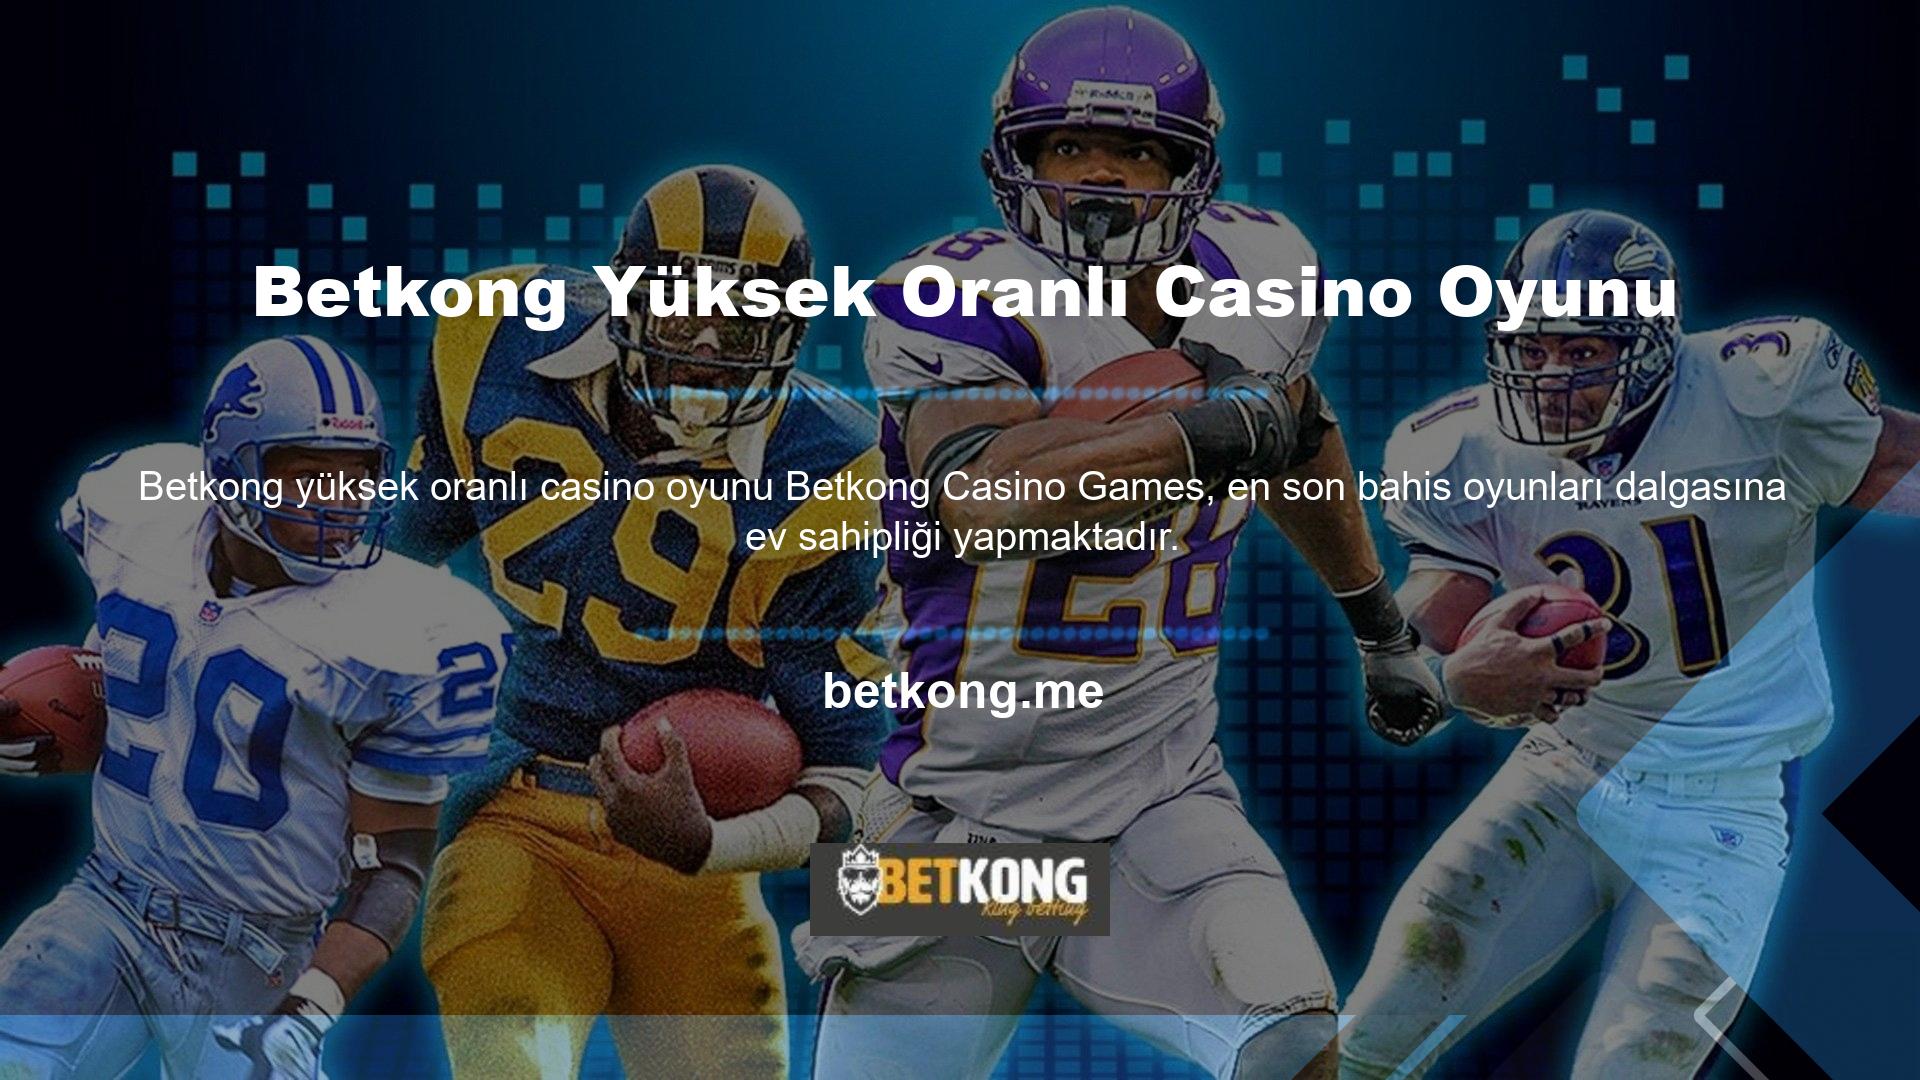 Betkong casino oyunları, çok sayıda oyuncunun bahis oynadığı oyunlardır